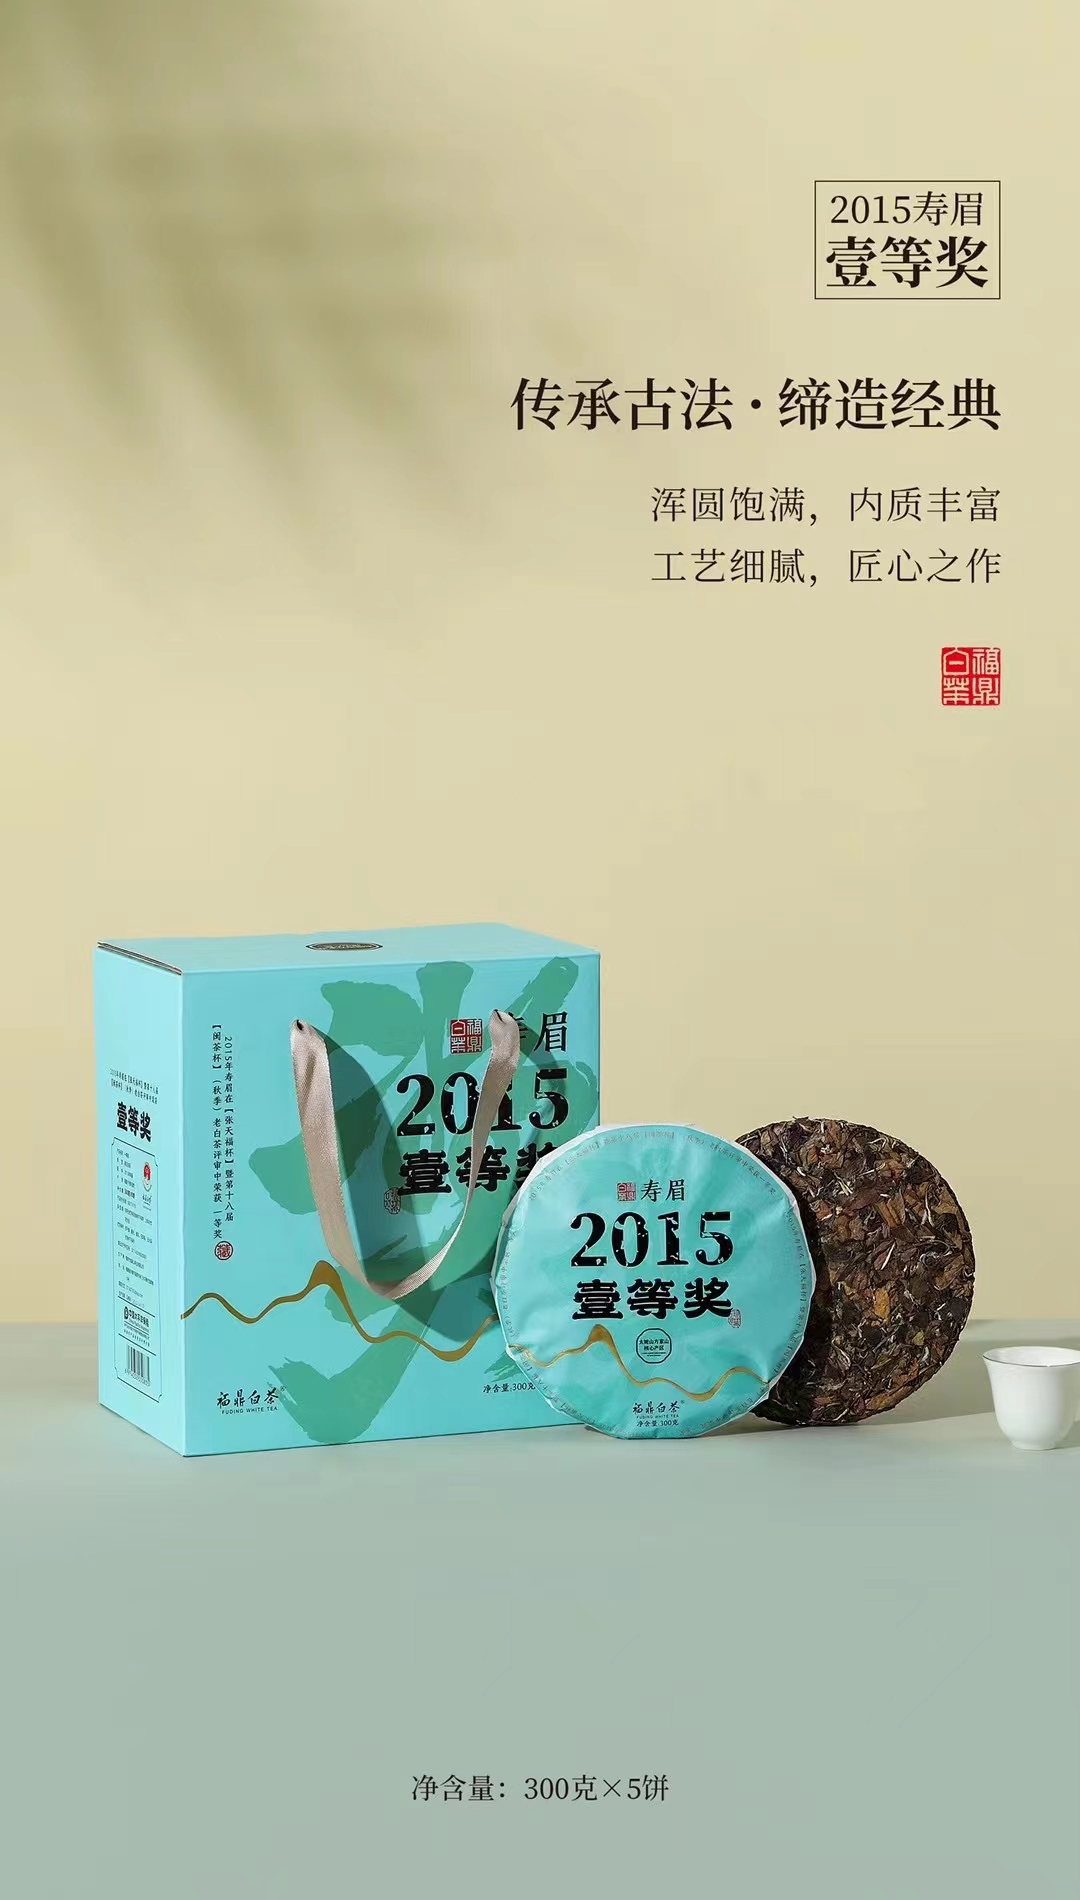 福安市2015年福鼎白茶一等奖寿眉饼